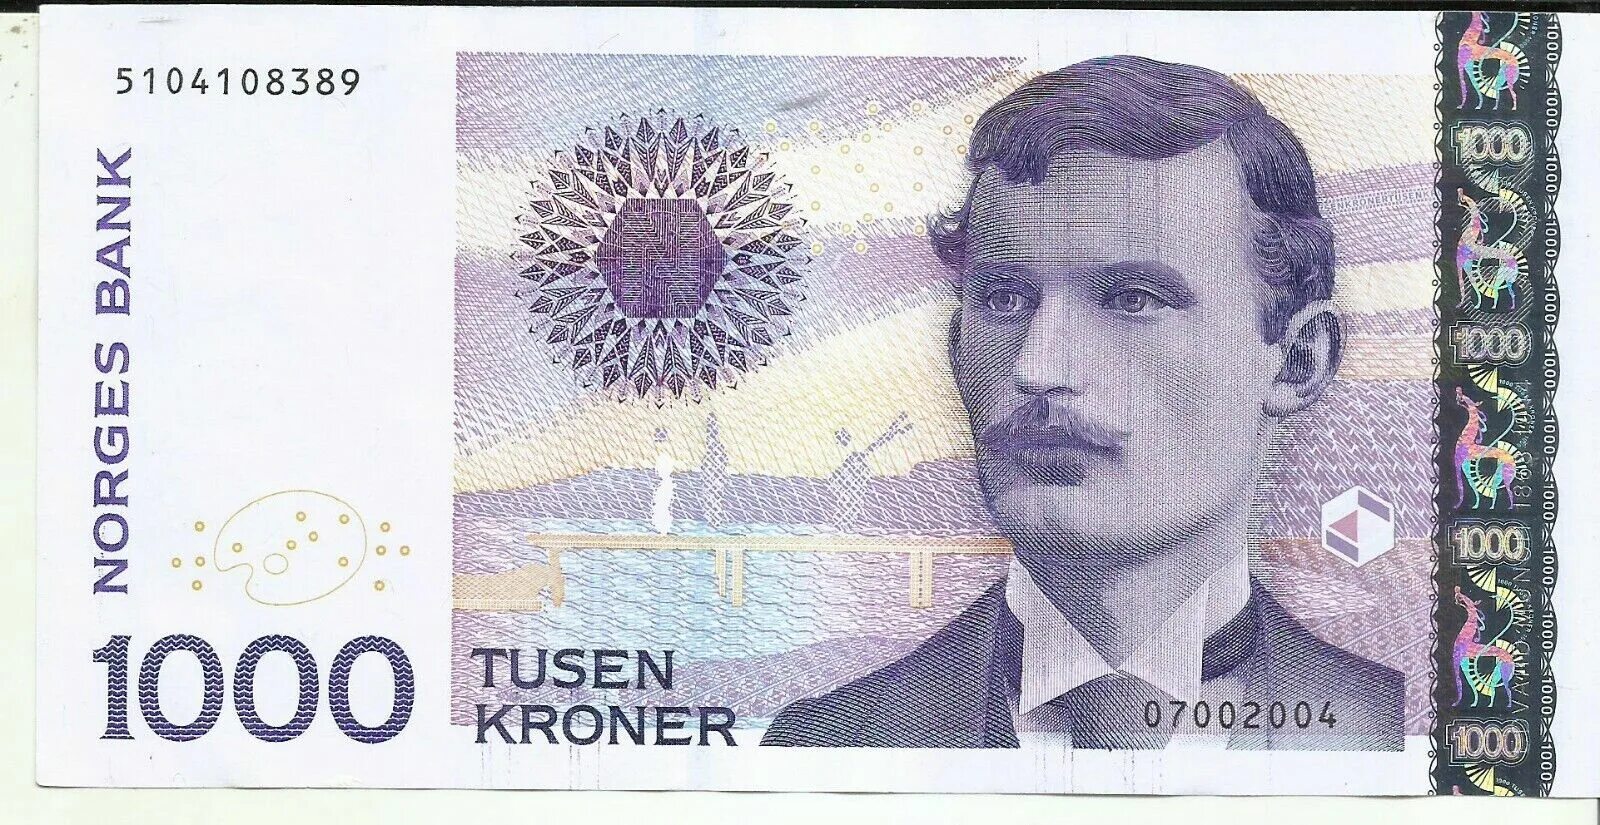 1000 крон. 1000 Норвежских крон Мунк. Купюра 1000 норвежских крон. Банкнота Норвегии 1000 крон. 1000 Крон Норвегия 2001.